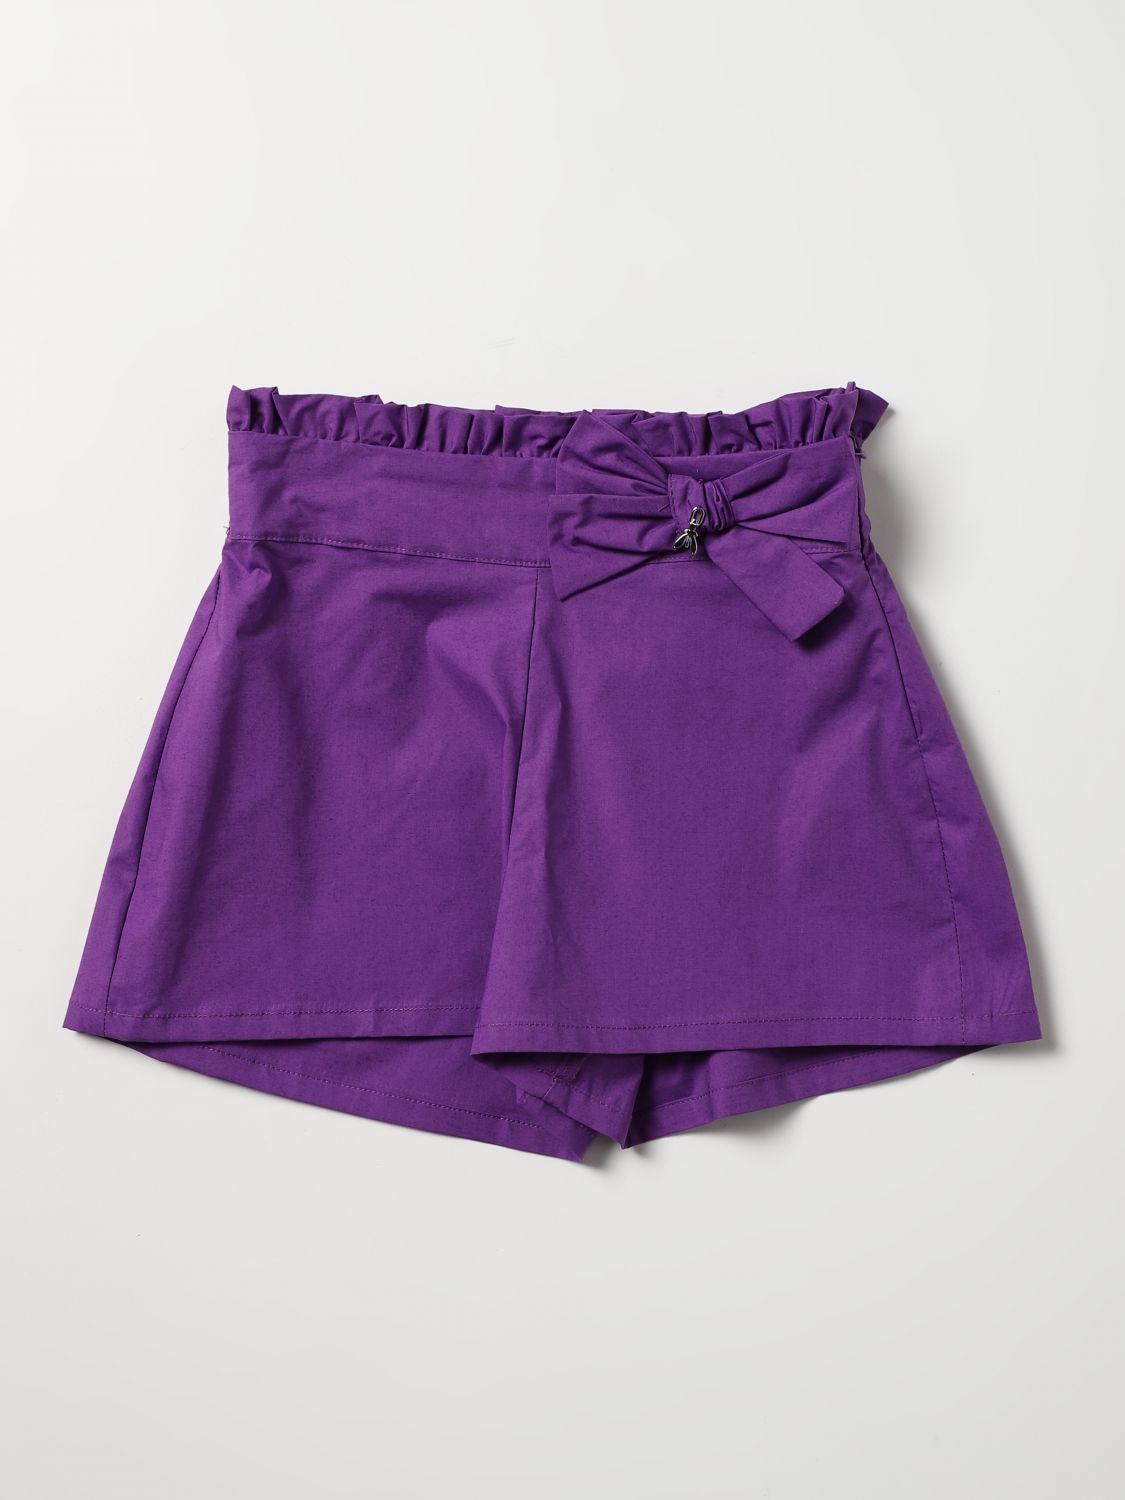 Pantalones cortos Patrizia Pepe: Pantalones cortos Patrizia Pepe para niña violeta 1